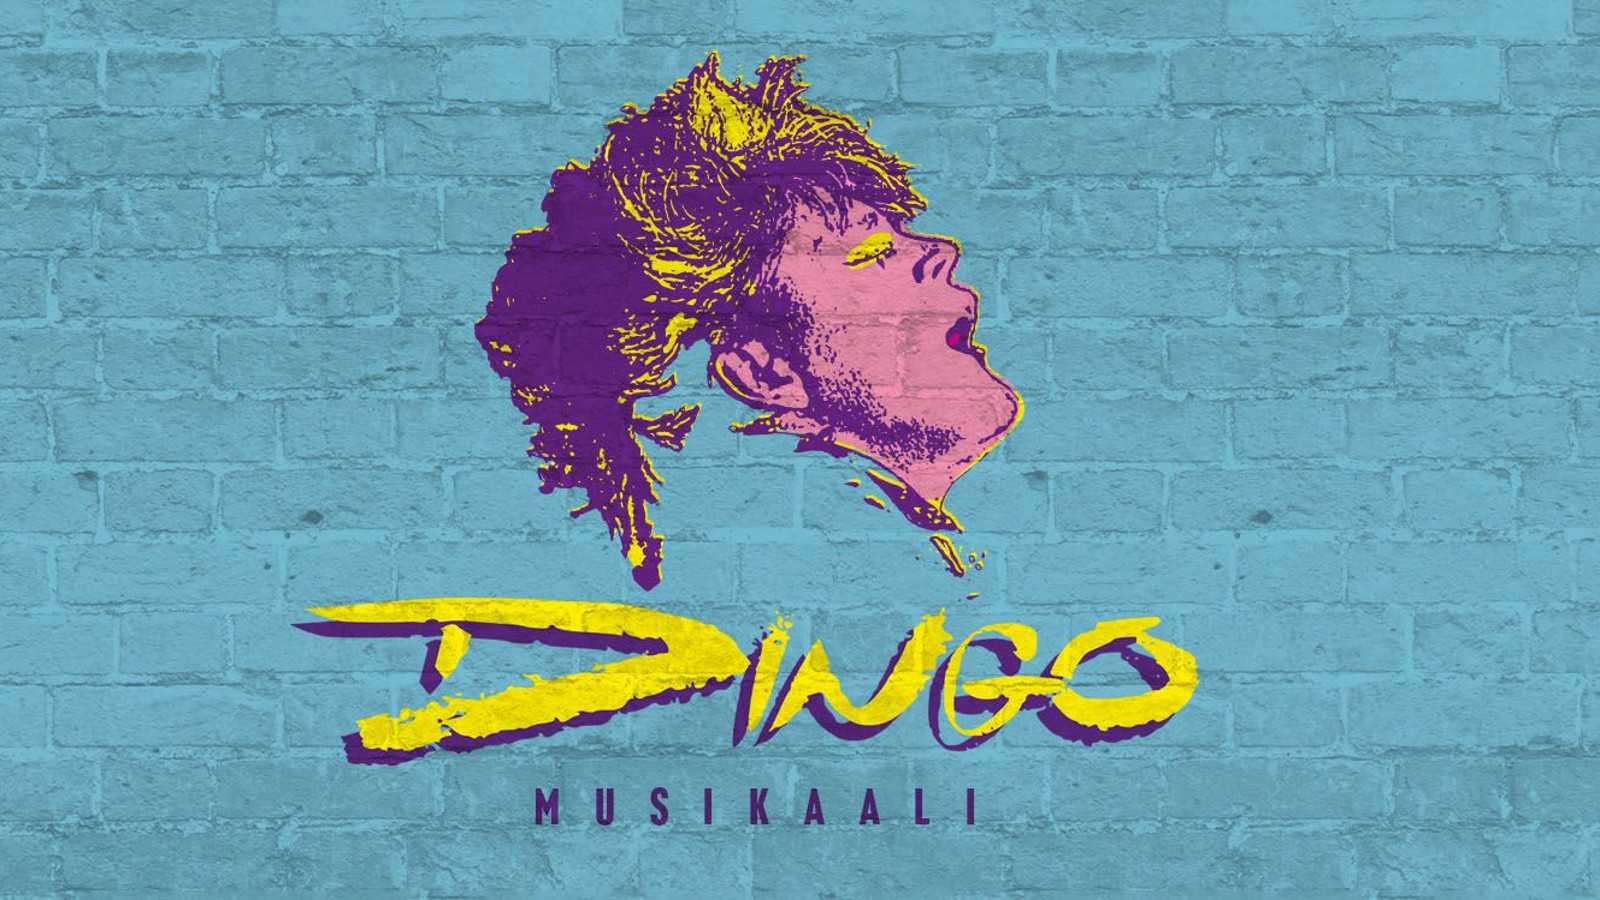 Kuvassa on Dingo-musikaalin juliste ja siinä on harmaata tiiliseinää ja piirretty Neumannin violetin keltainen profiili.  Alla on on teksti Dingo ja musikaali.